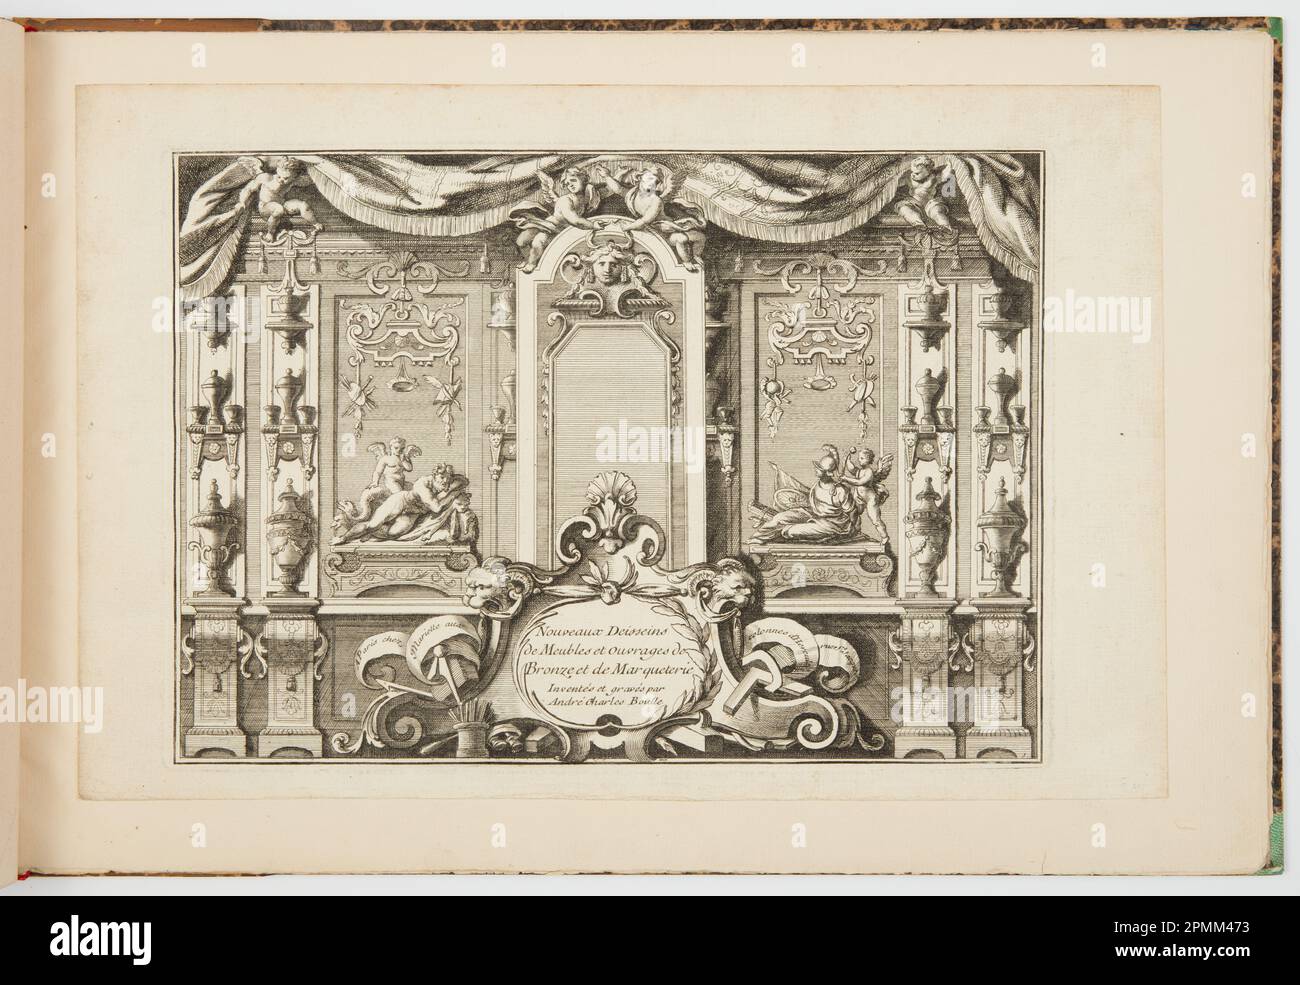 Imprimé (livre relié), nouveaux dépôts de meubles et ouvrages de bronze et de marqueterie (nouveaux dessins pour le mobilier et les œuvres de bronze et de marqueterie); conçu par André-Charles Boulle (français, 1642 – 1732); publié par Jean Mariette (1660–1742); France; gravure et gravure sur papier blanc cassé; feuille : 24 x 36,5 cm (9 7/16 x 14 3/8 po) Marq. Plateau : 20,9 x 29,9 cm (8 1/4 x 11 3/4 po.) Image : 20,7 x 29,2 cm (8 1/8 x 11 1/2 po.) Banque D'Images